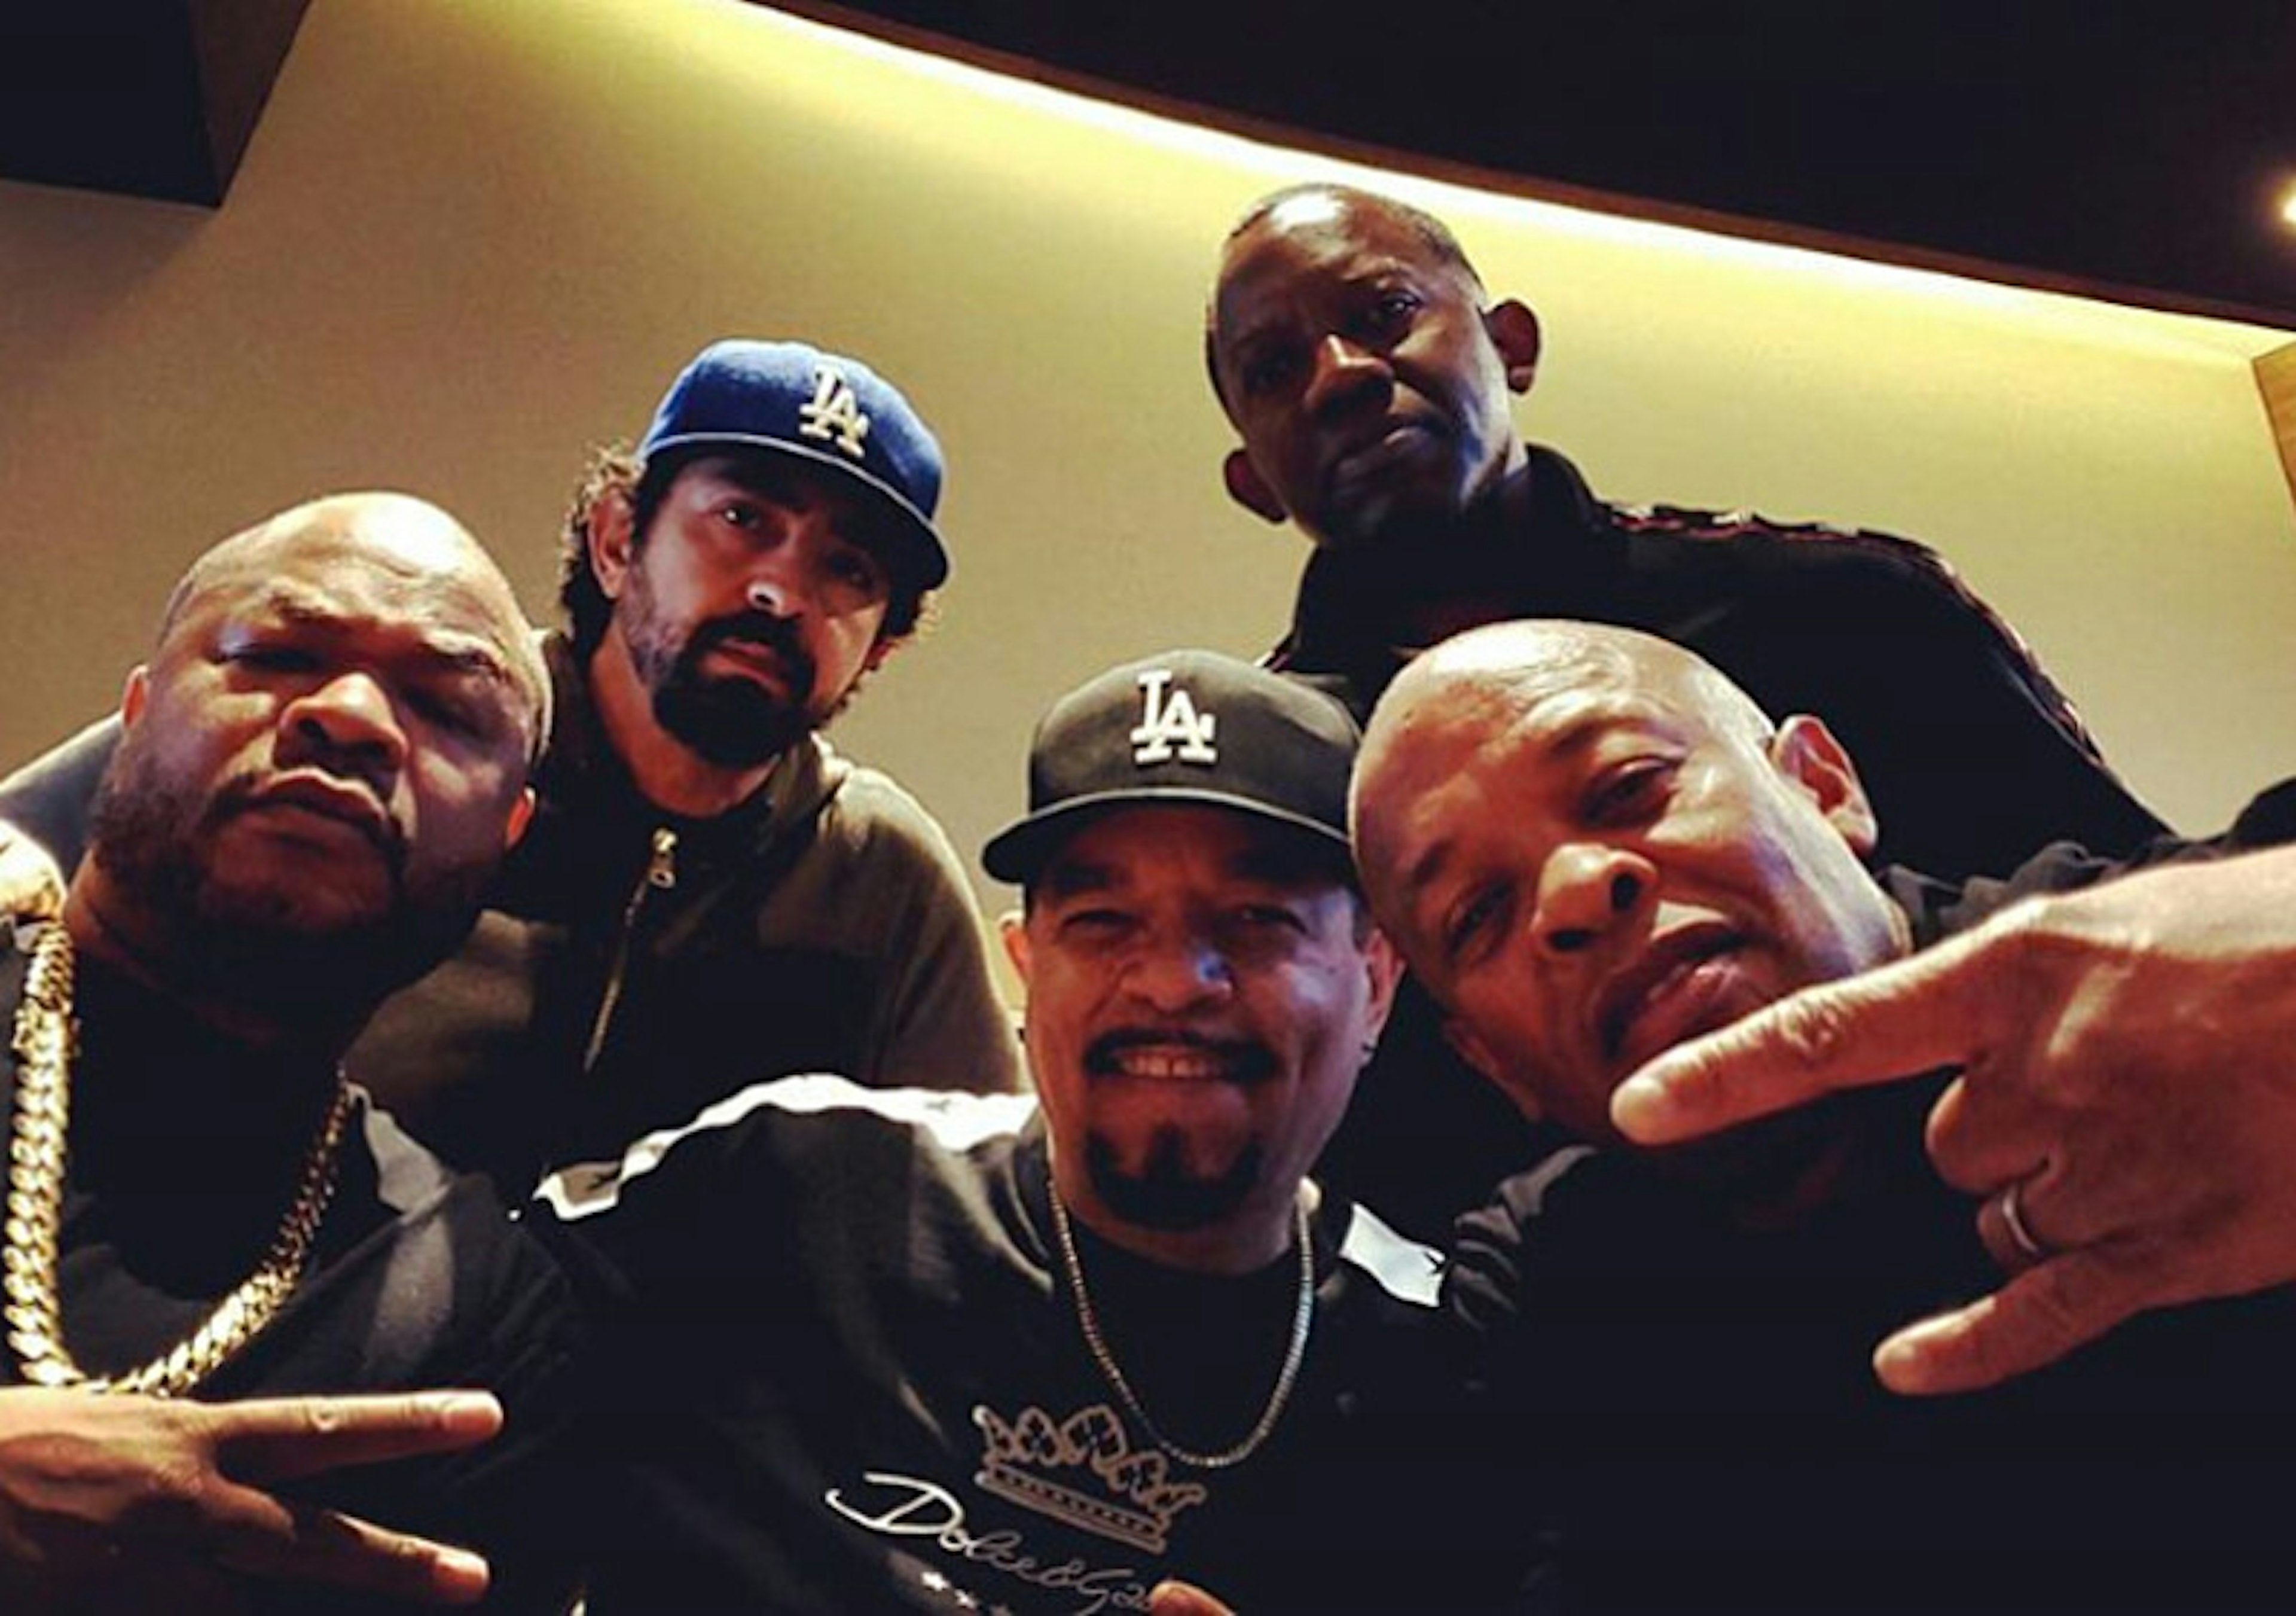 Amerykańscy weterani nie próżnują: Dr. Dre, Xzibit i Ice-T pracują nad czymś w studiu, a Nas nagrywa nowy album